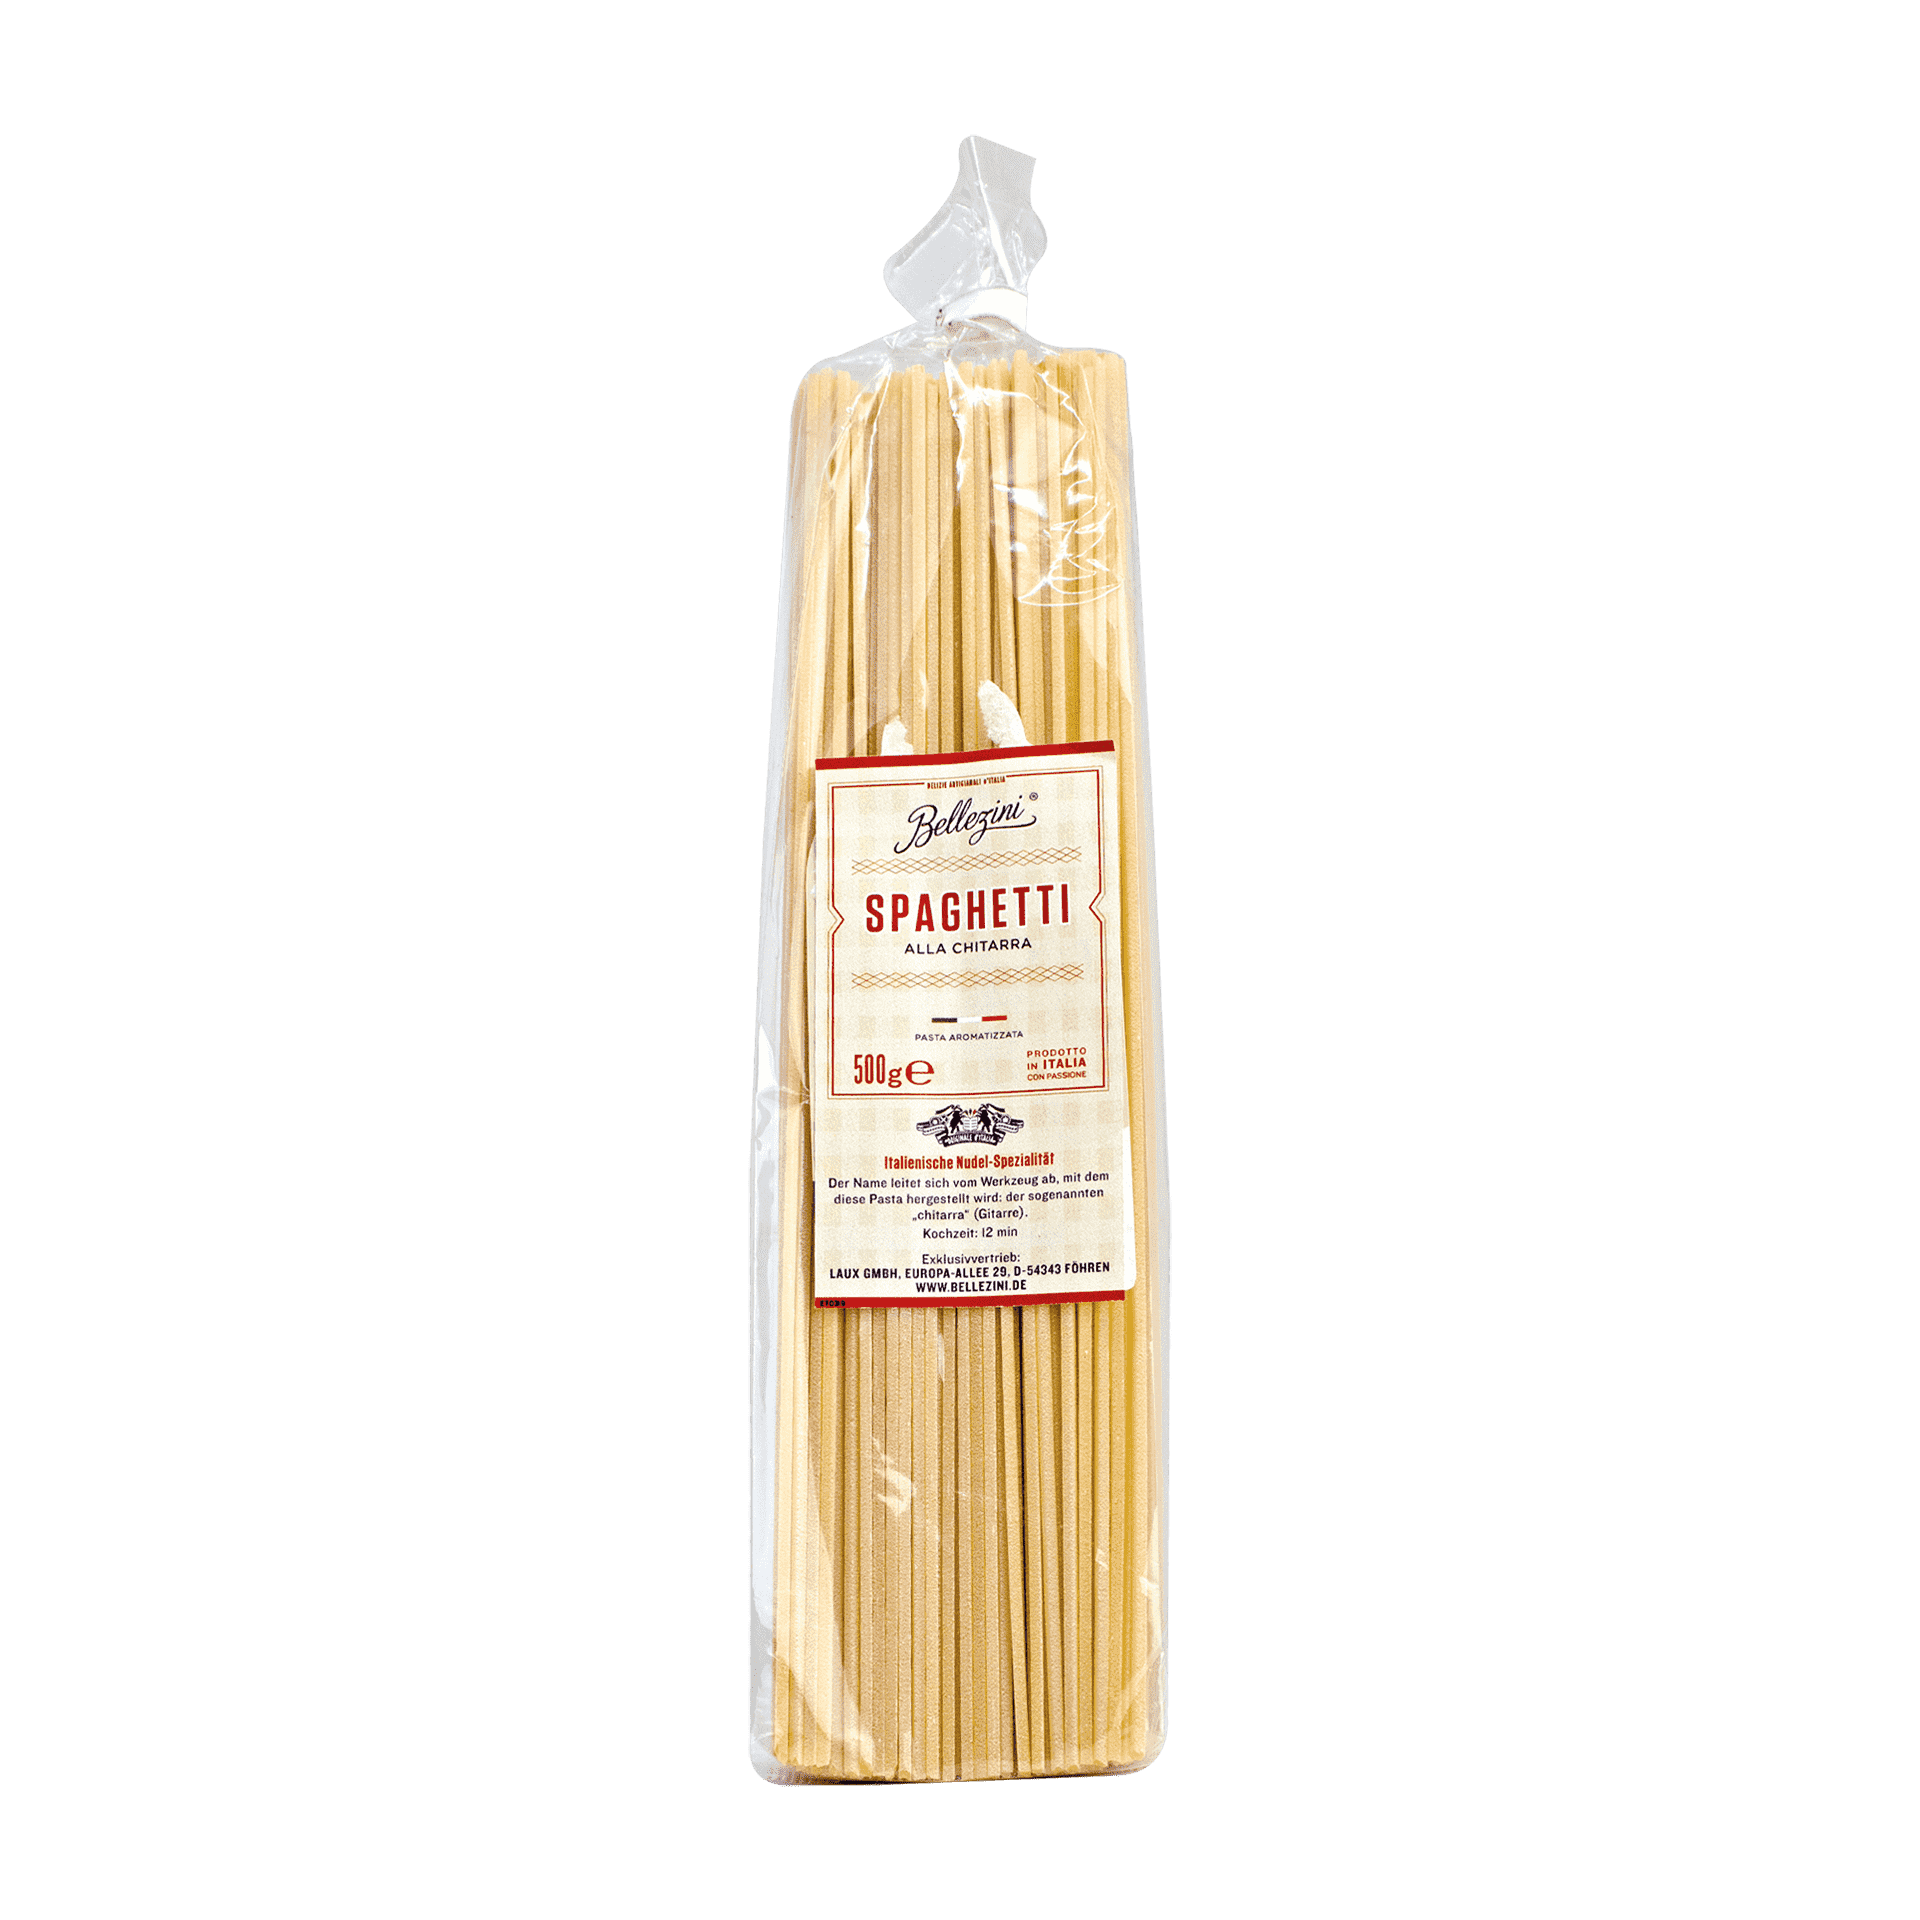 "Spaghetti alla Chitarra" - Original italienische Pasta